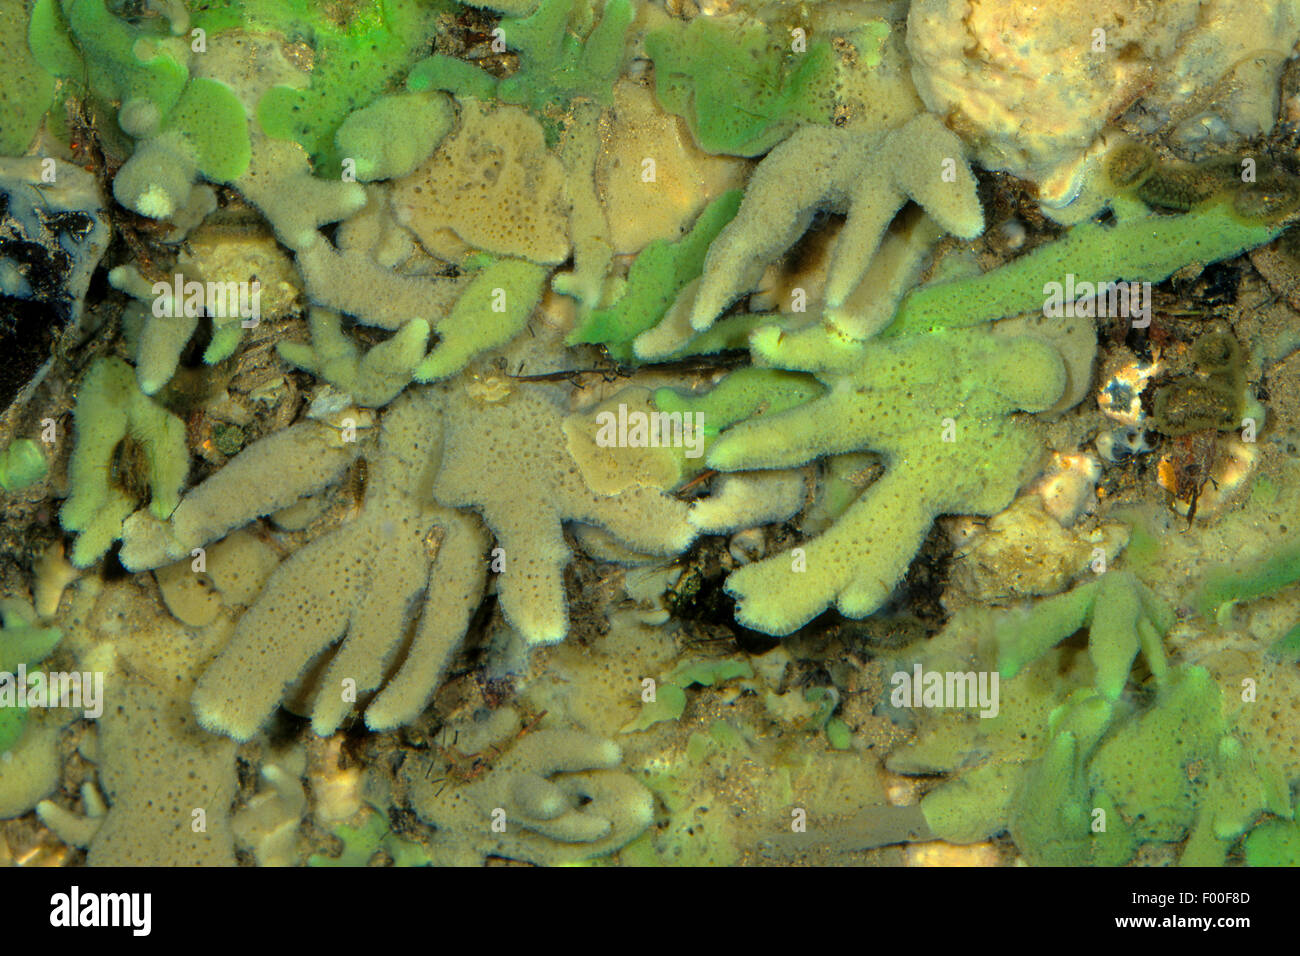 Pond spugna e spugna di acqua dolce (Spongilla lacustris), spugna con verde unicellulare alghe generando il colore verde Foto Stock